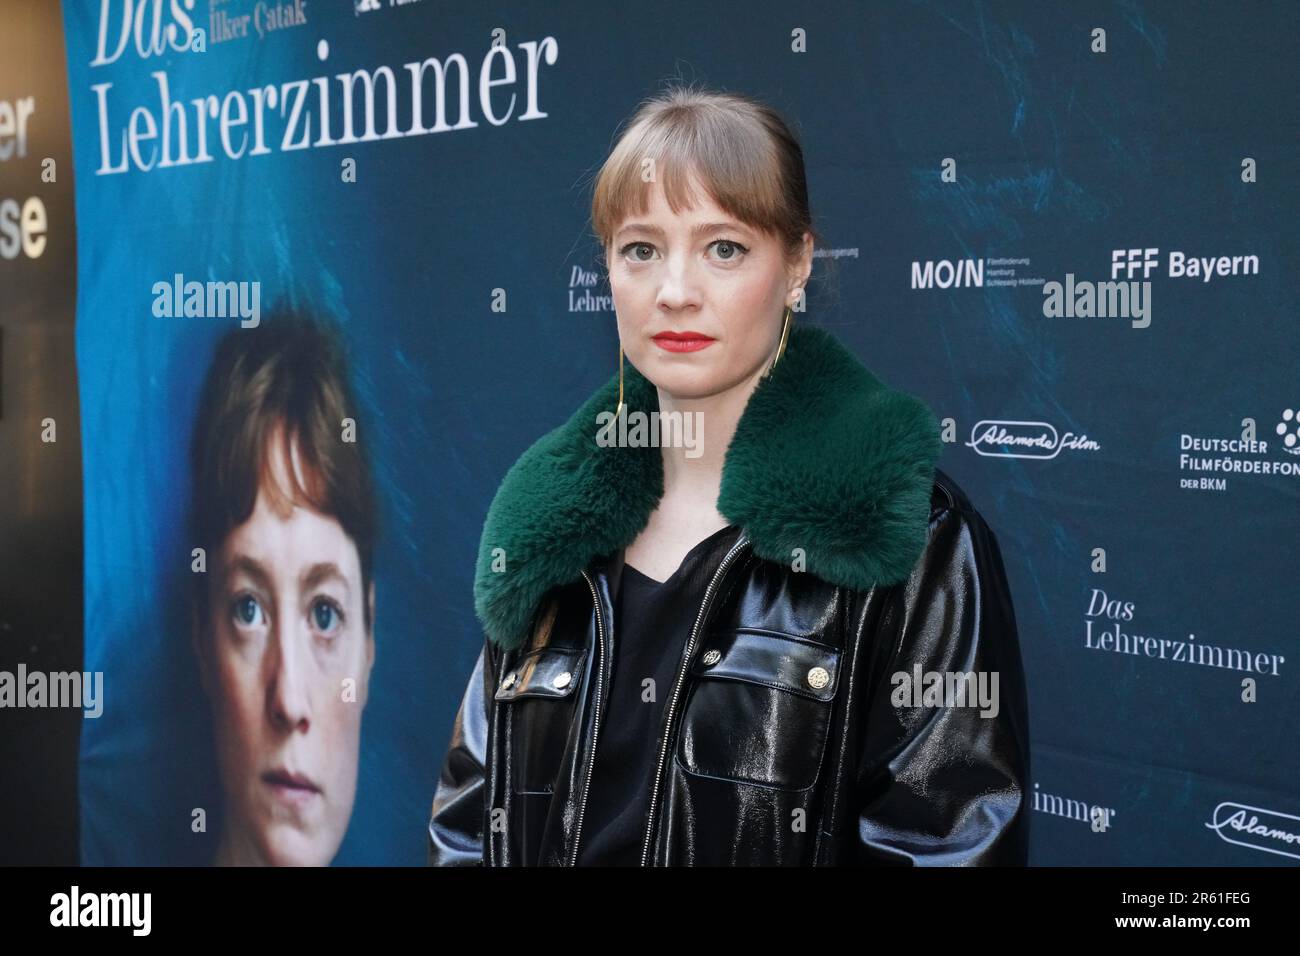 Actress Leonie Benesch seen before the premiere screening of her fim 'Das Lehrerzimmer' at City Cinema in Munich Stock Photo